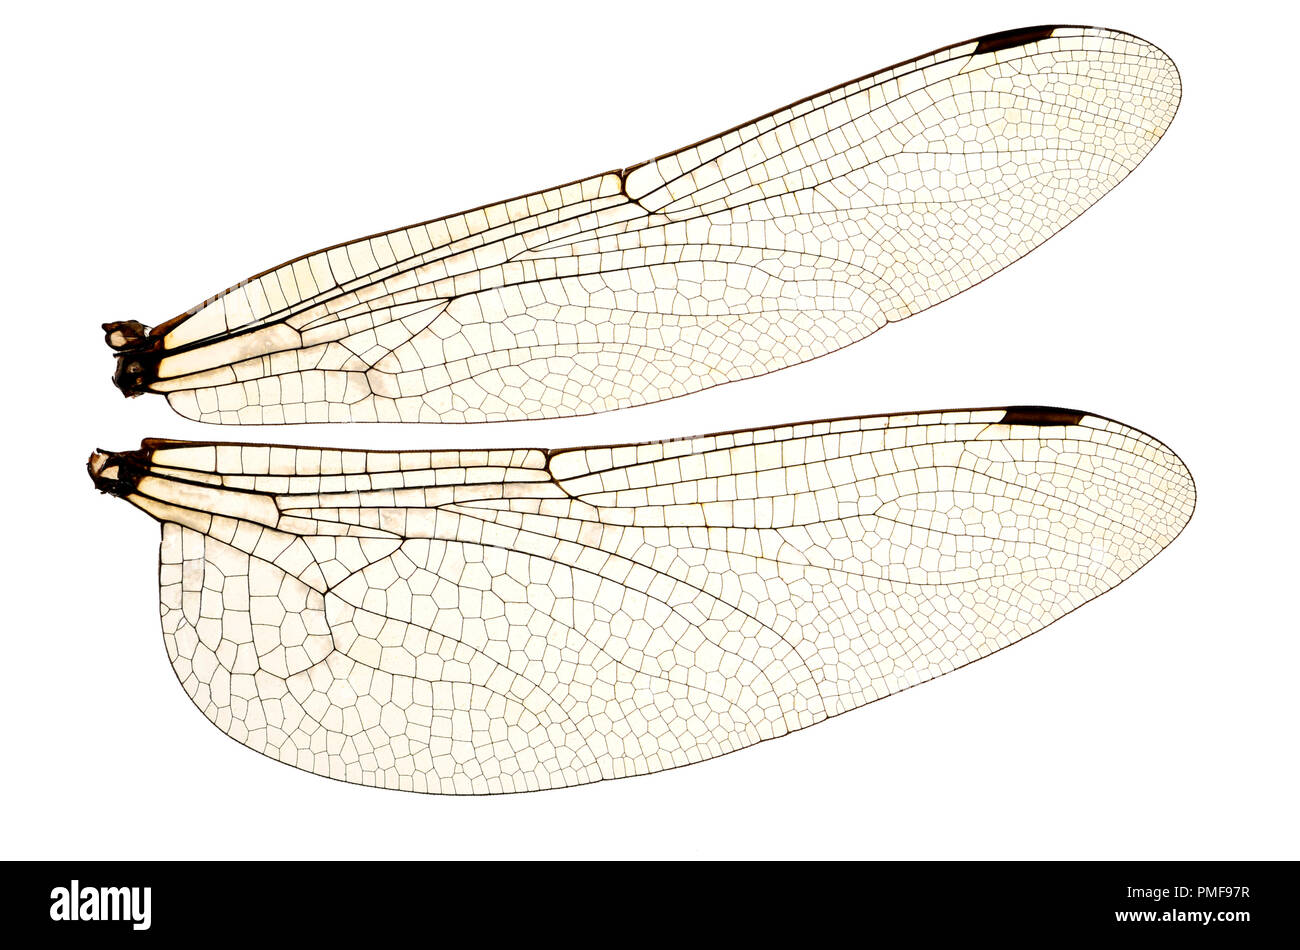 Les ailes de la Libellule Dard commun (Sympetrum striolatum) à partir d'un spécimen mort. Montrant les veines et les cellules transparentes Banque D'Images